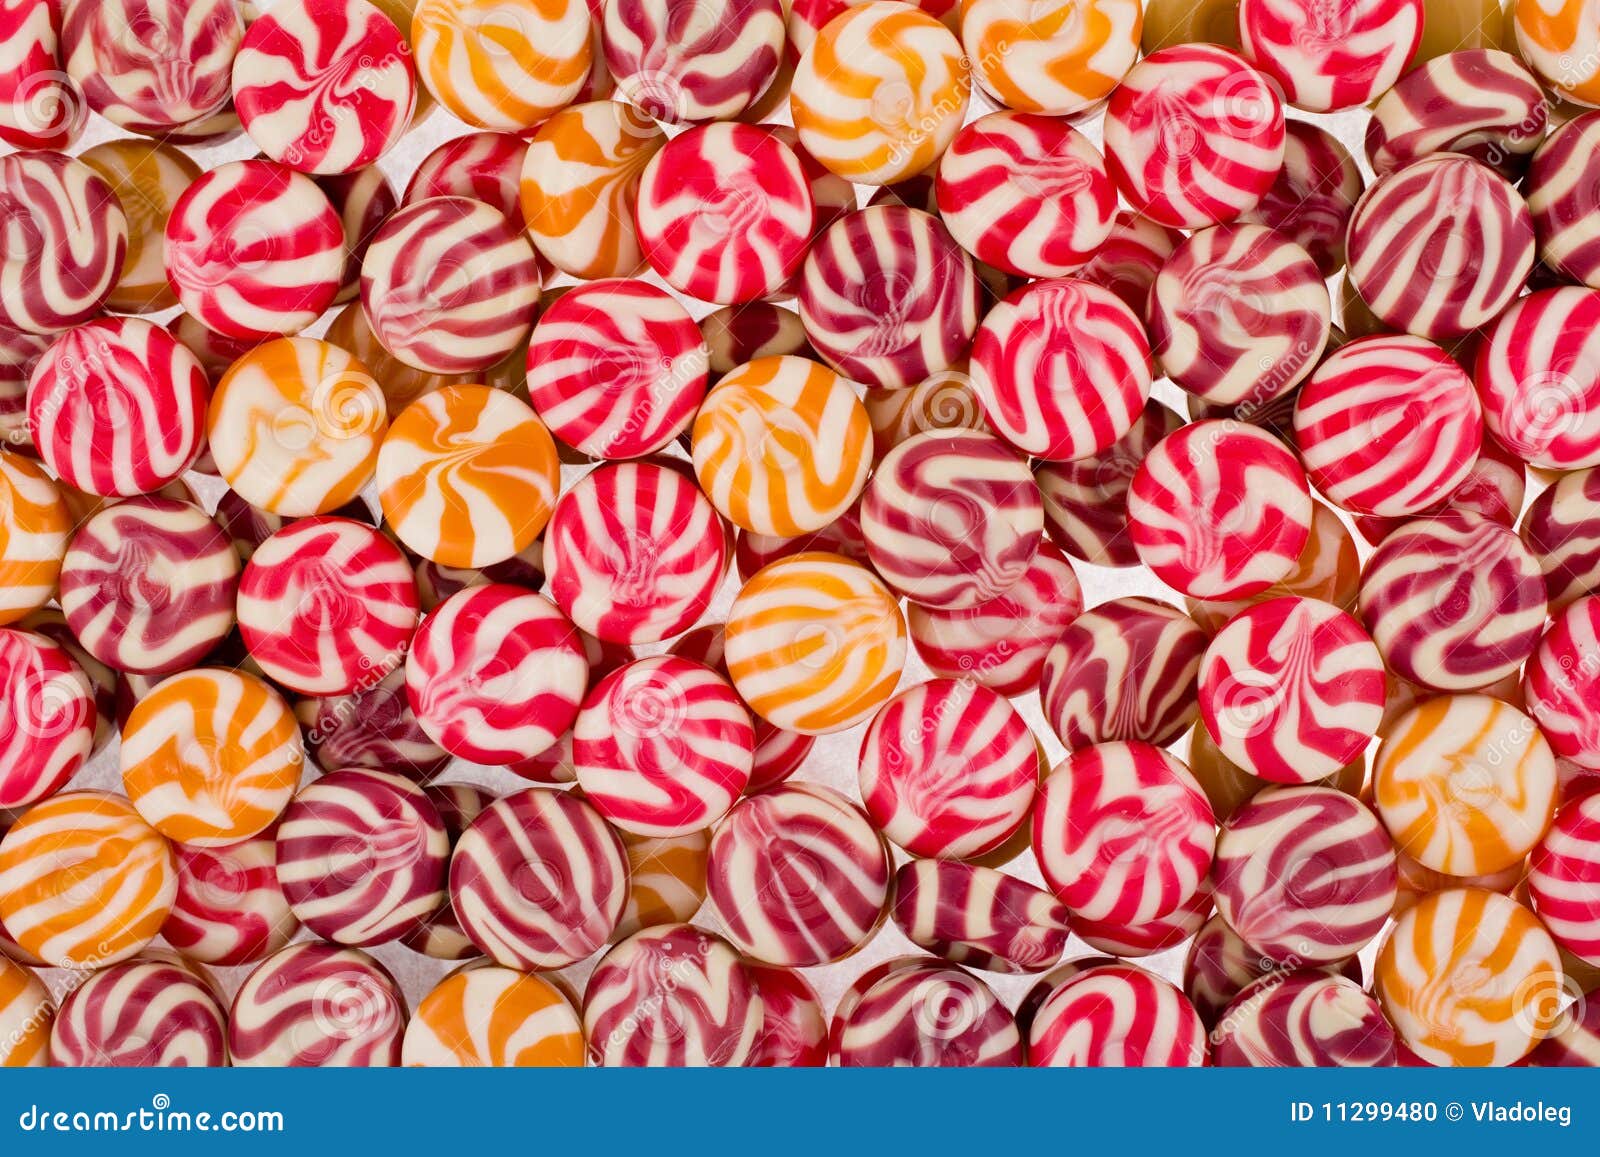 Bonbons à couleur photo stock. Image du nourriture, valentin - 11299480